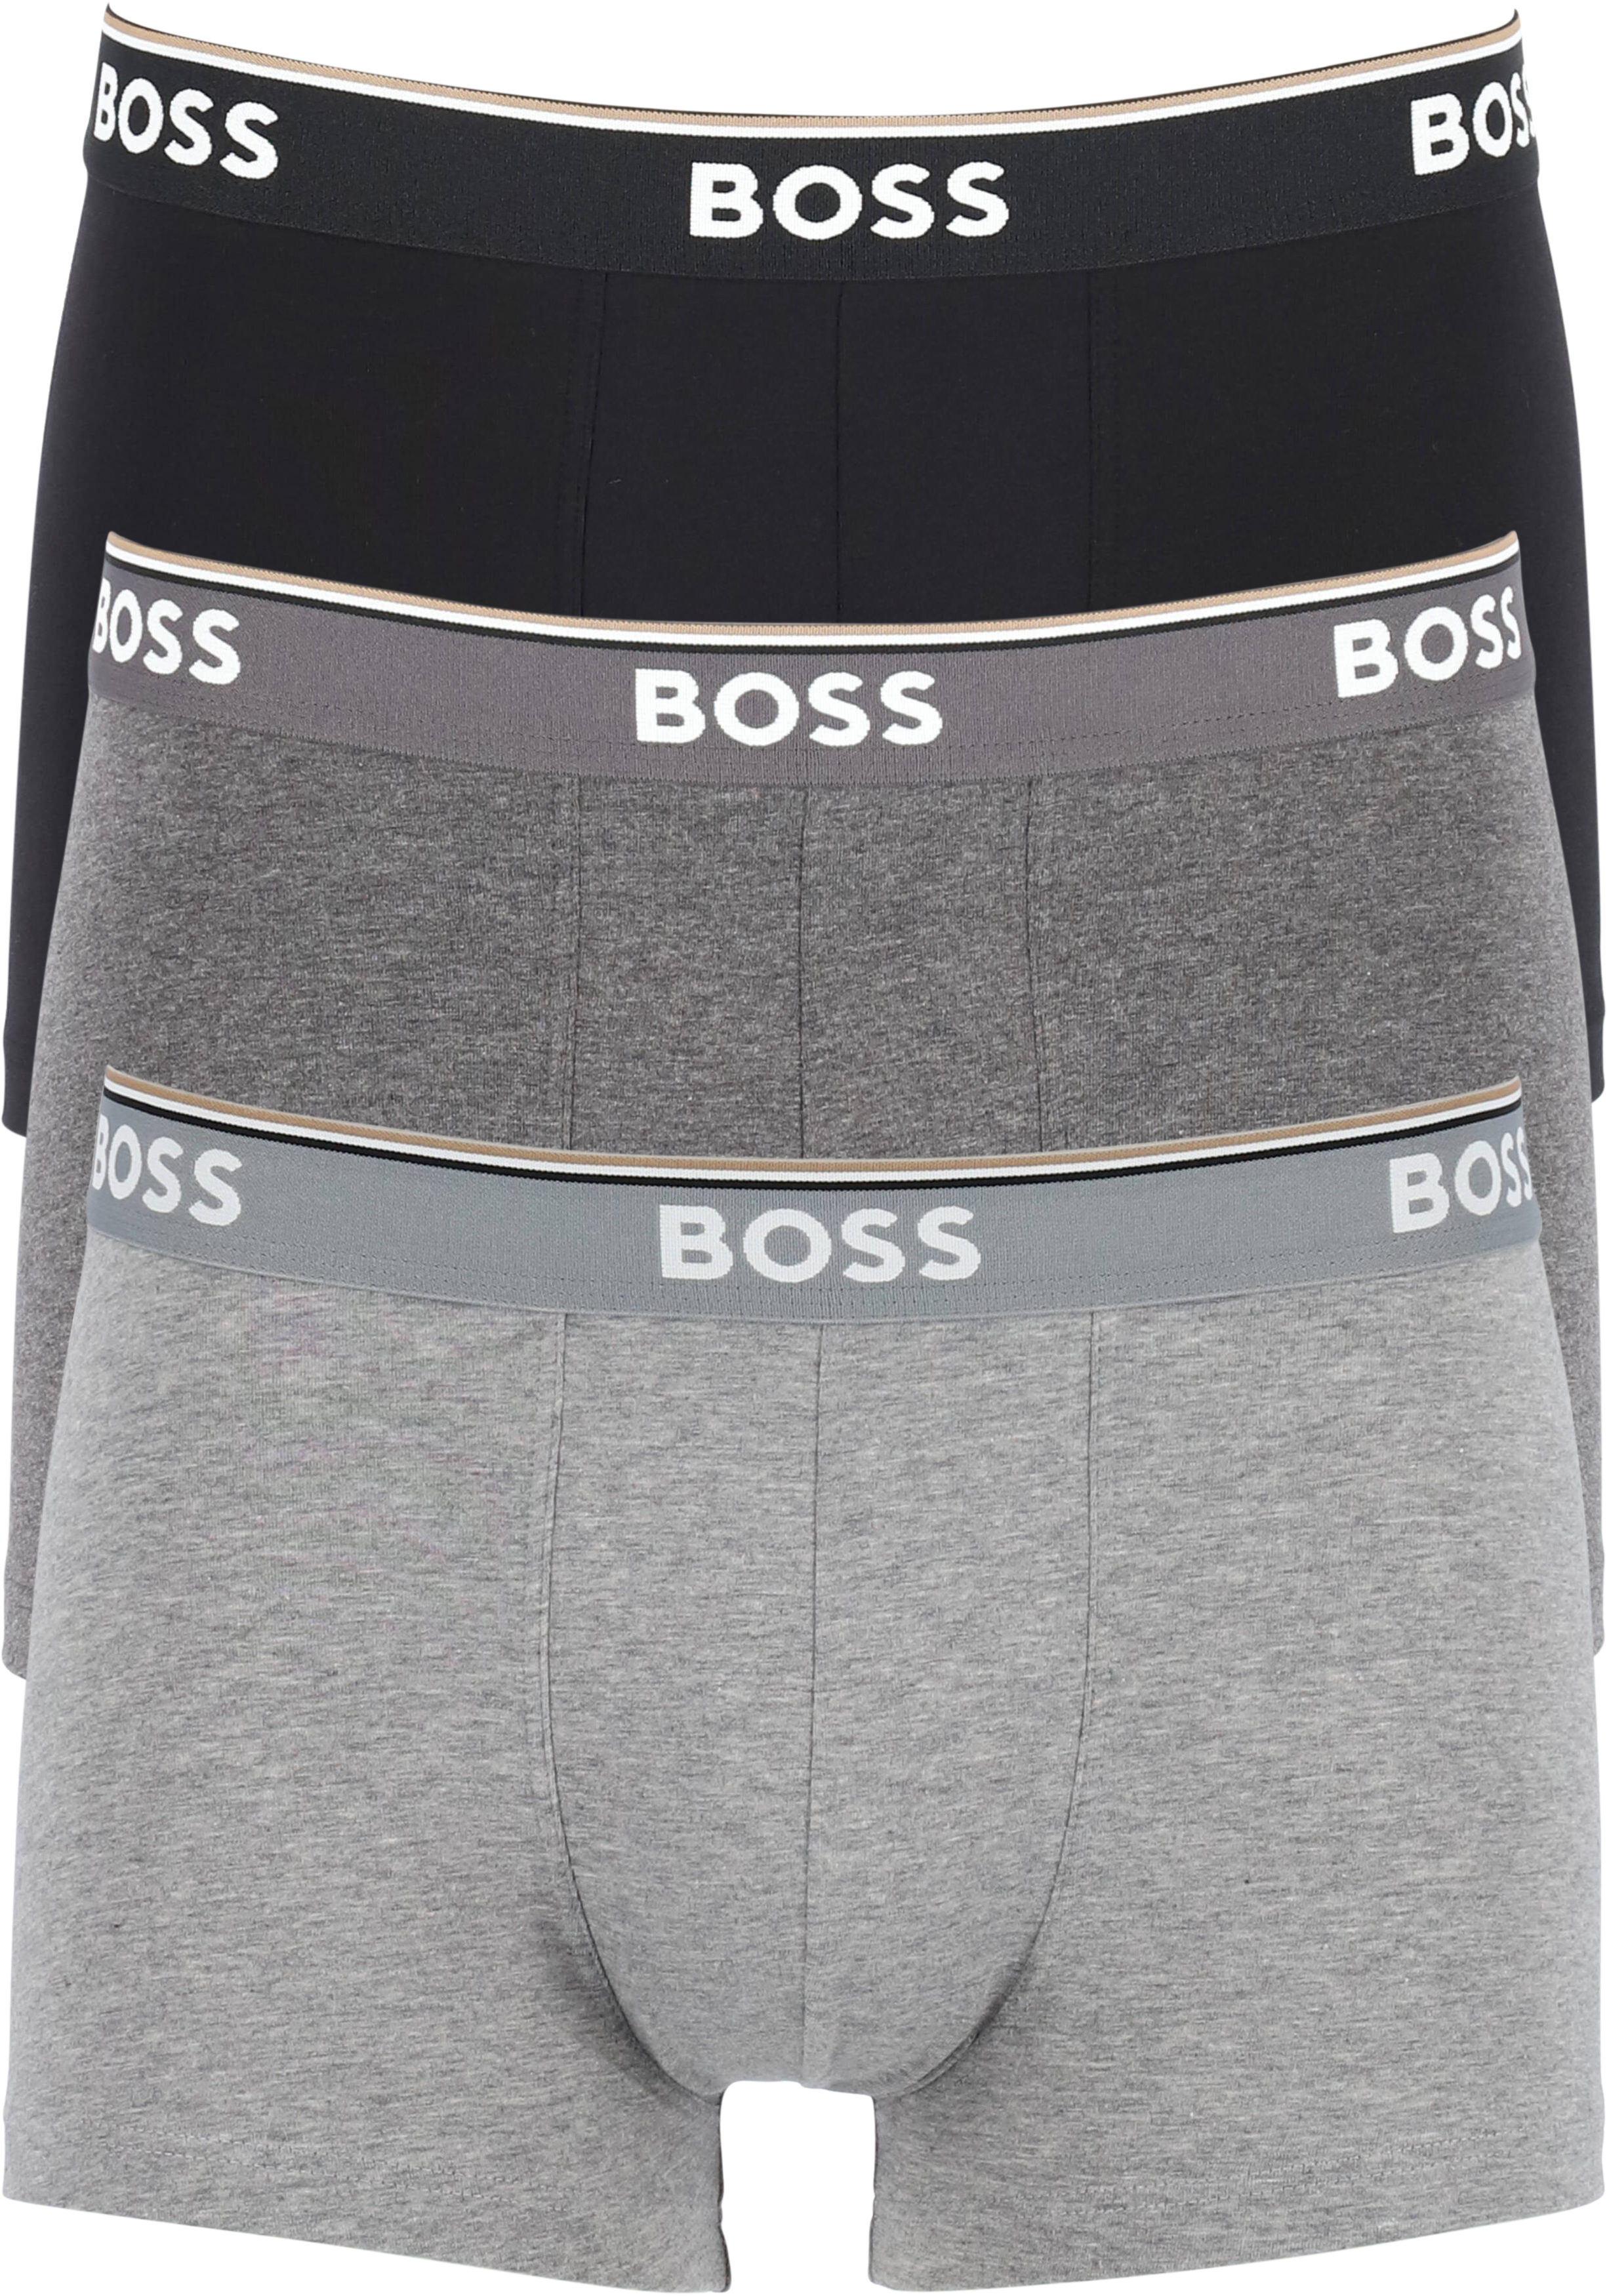 HUGO BOSS Power trunks (3-pack), heren boxers kort, grijs, grijs, zwart